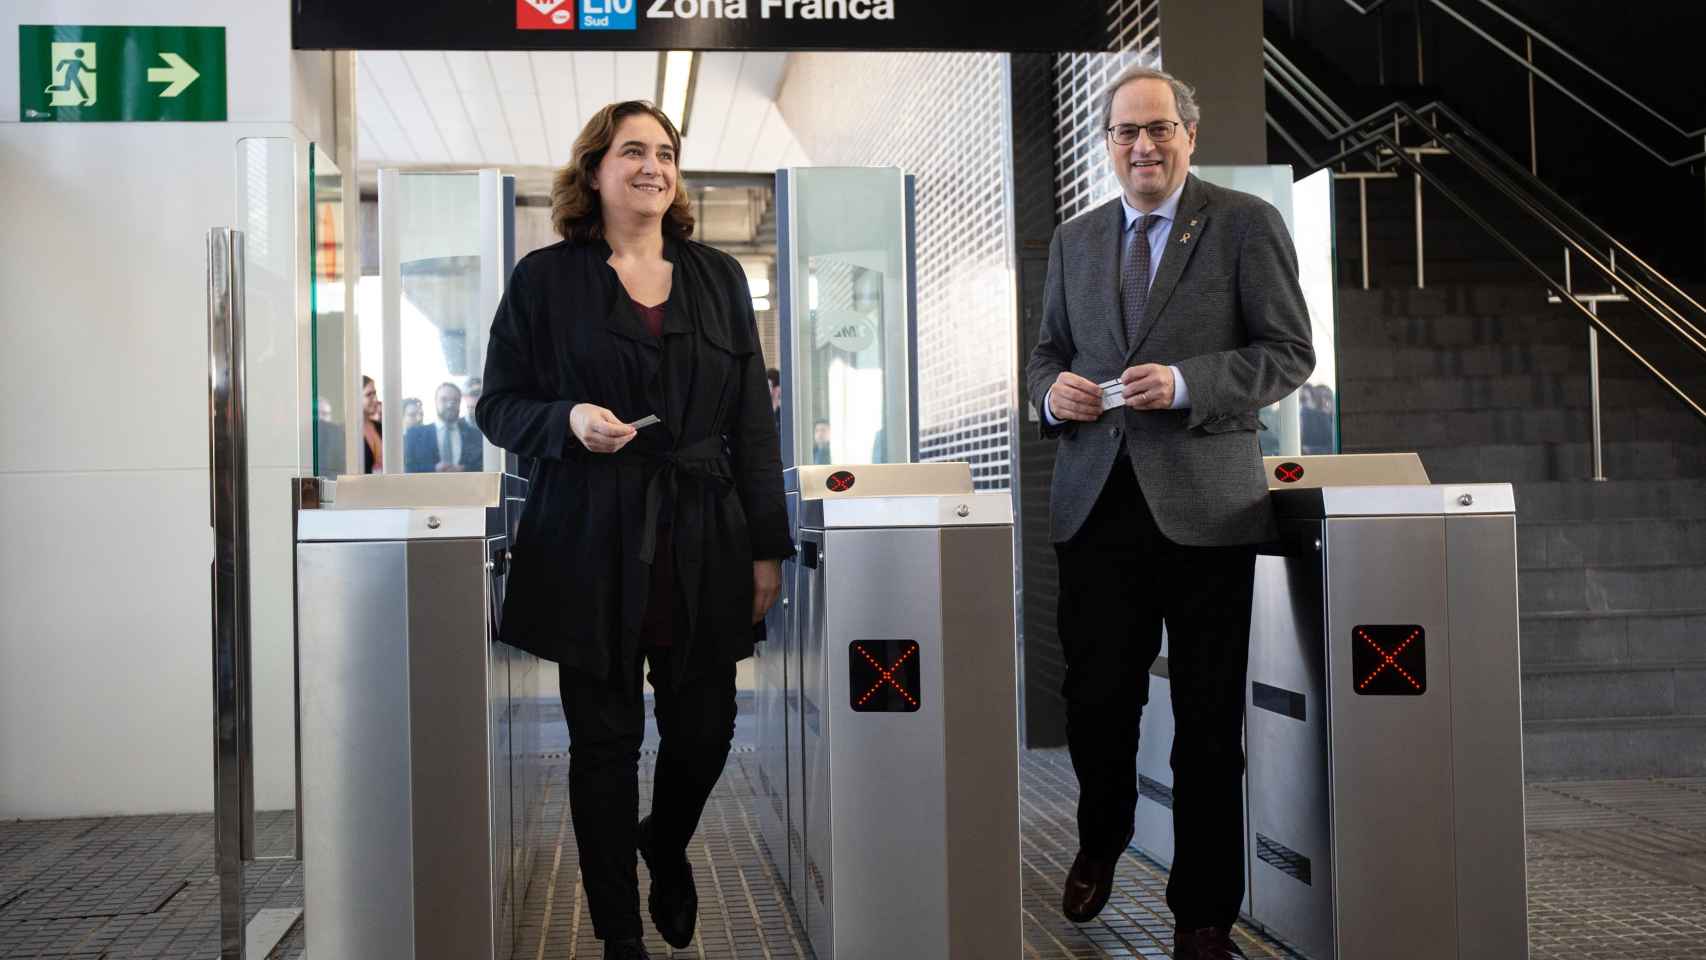 La alcaldesa de Barcelona Ada Colau y el presidente de la Generalitat Quim Torra en la inauguración de la estación de metro de Zona Franca / EUROPA PRESS